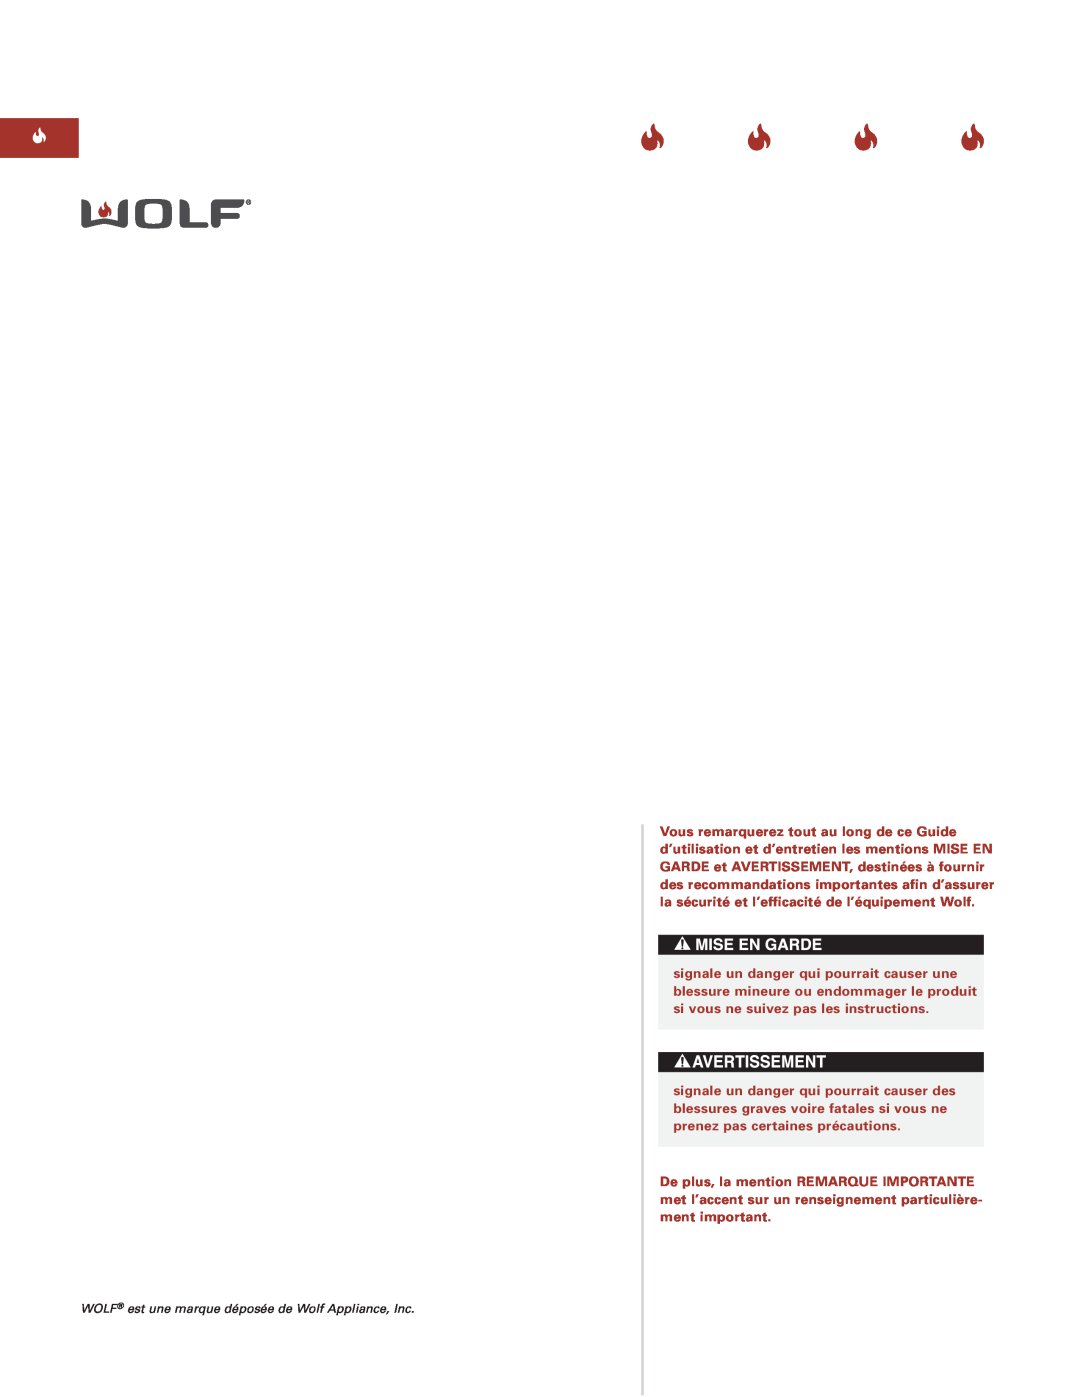 Sub-Zero Downdraft Ventilation manual WOLF est une marque déposée de Wolf Appliance, Inc 